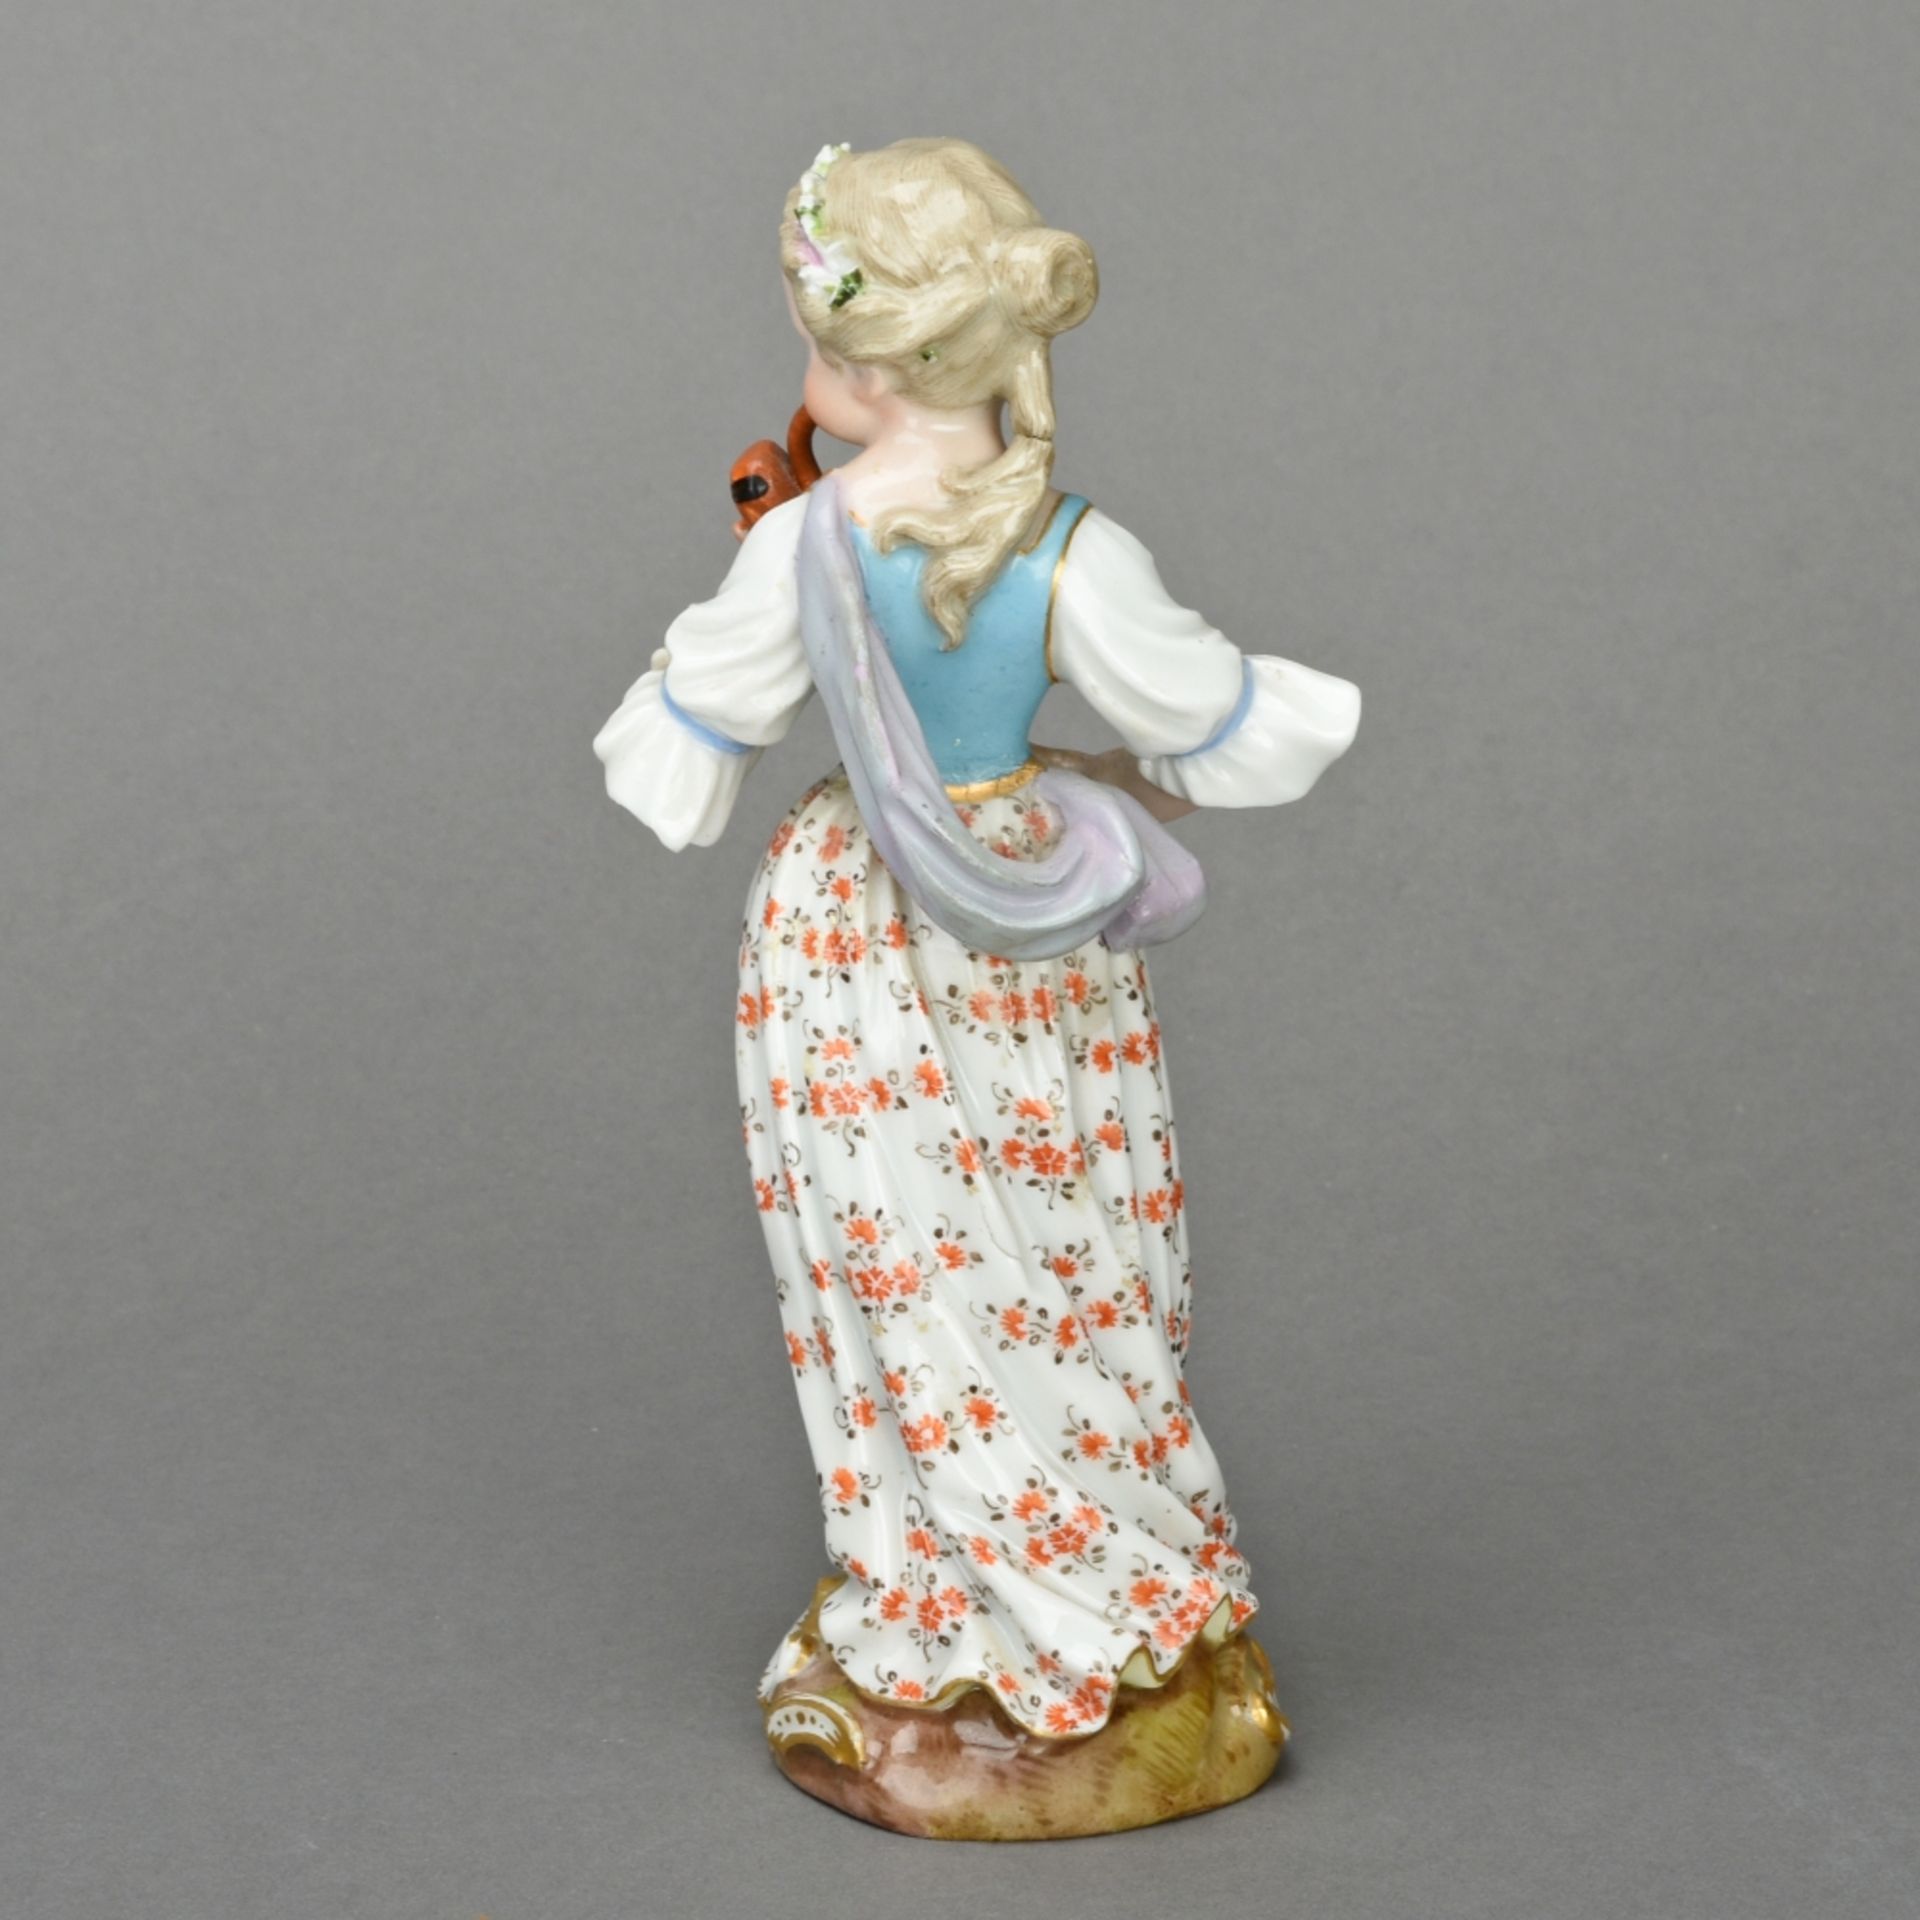 Fagottspielerin aus der Mädchenkapelle - Bild 3 aus 5